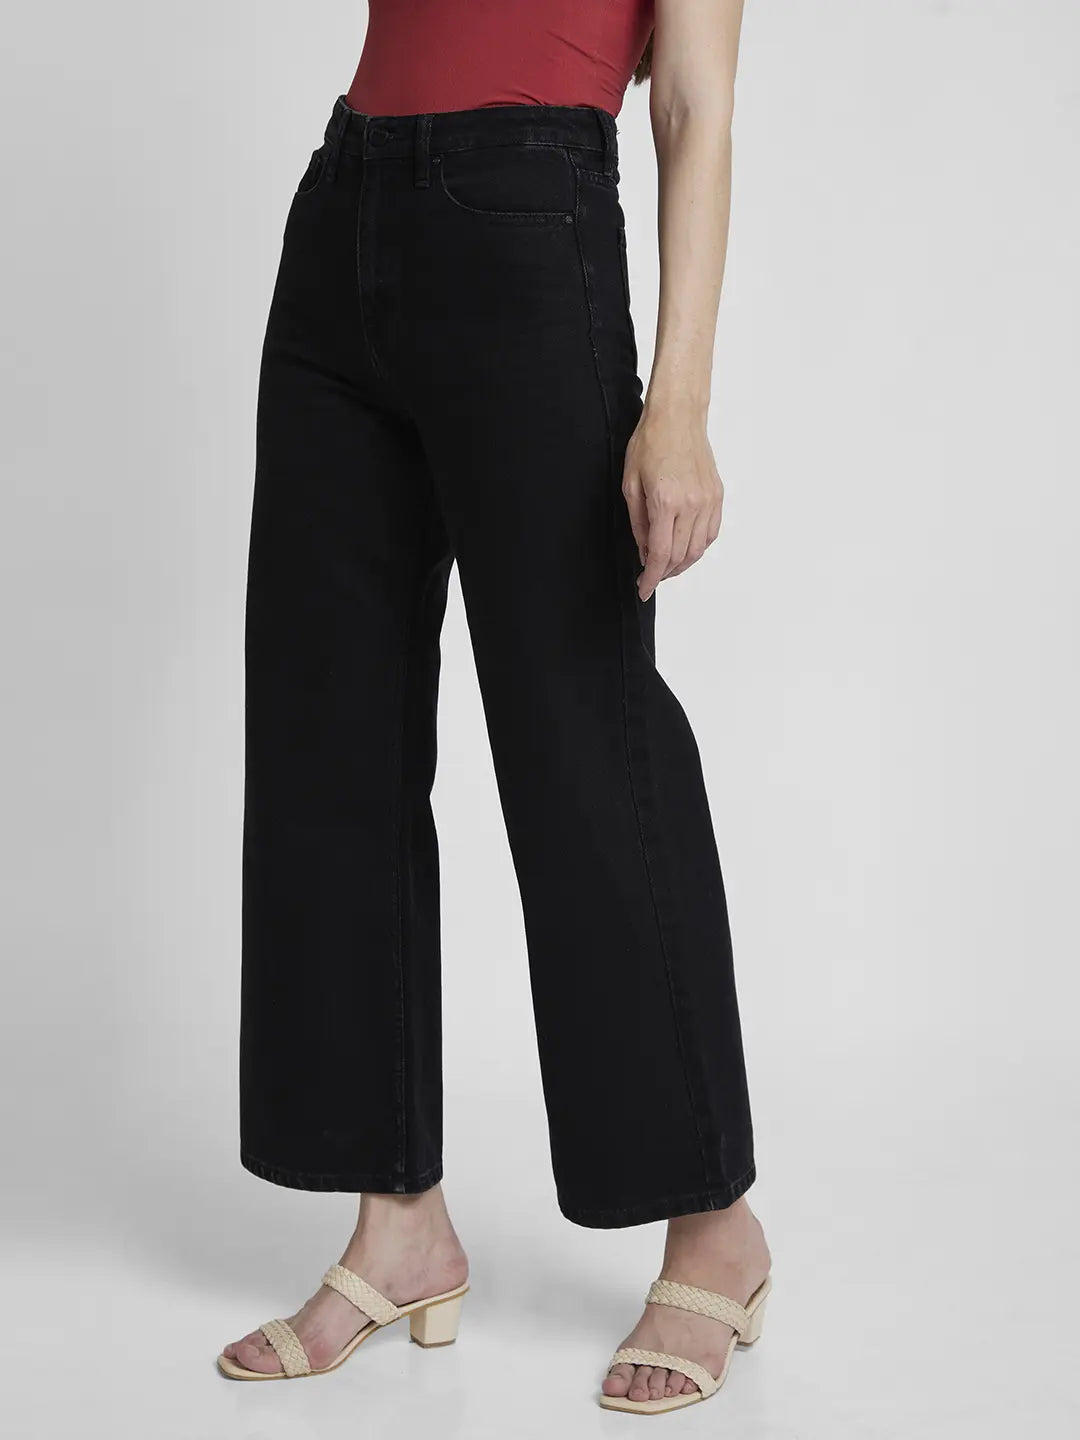 Spykar Women Black Cotton Wide Leg Fit Ankle Length Clean look Jeans -(Bella-Wide leg)